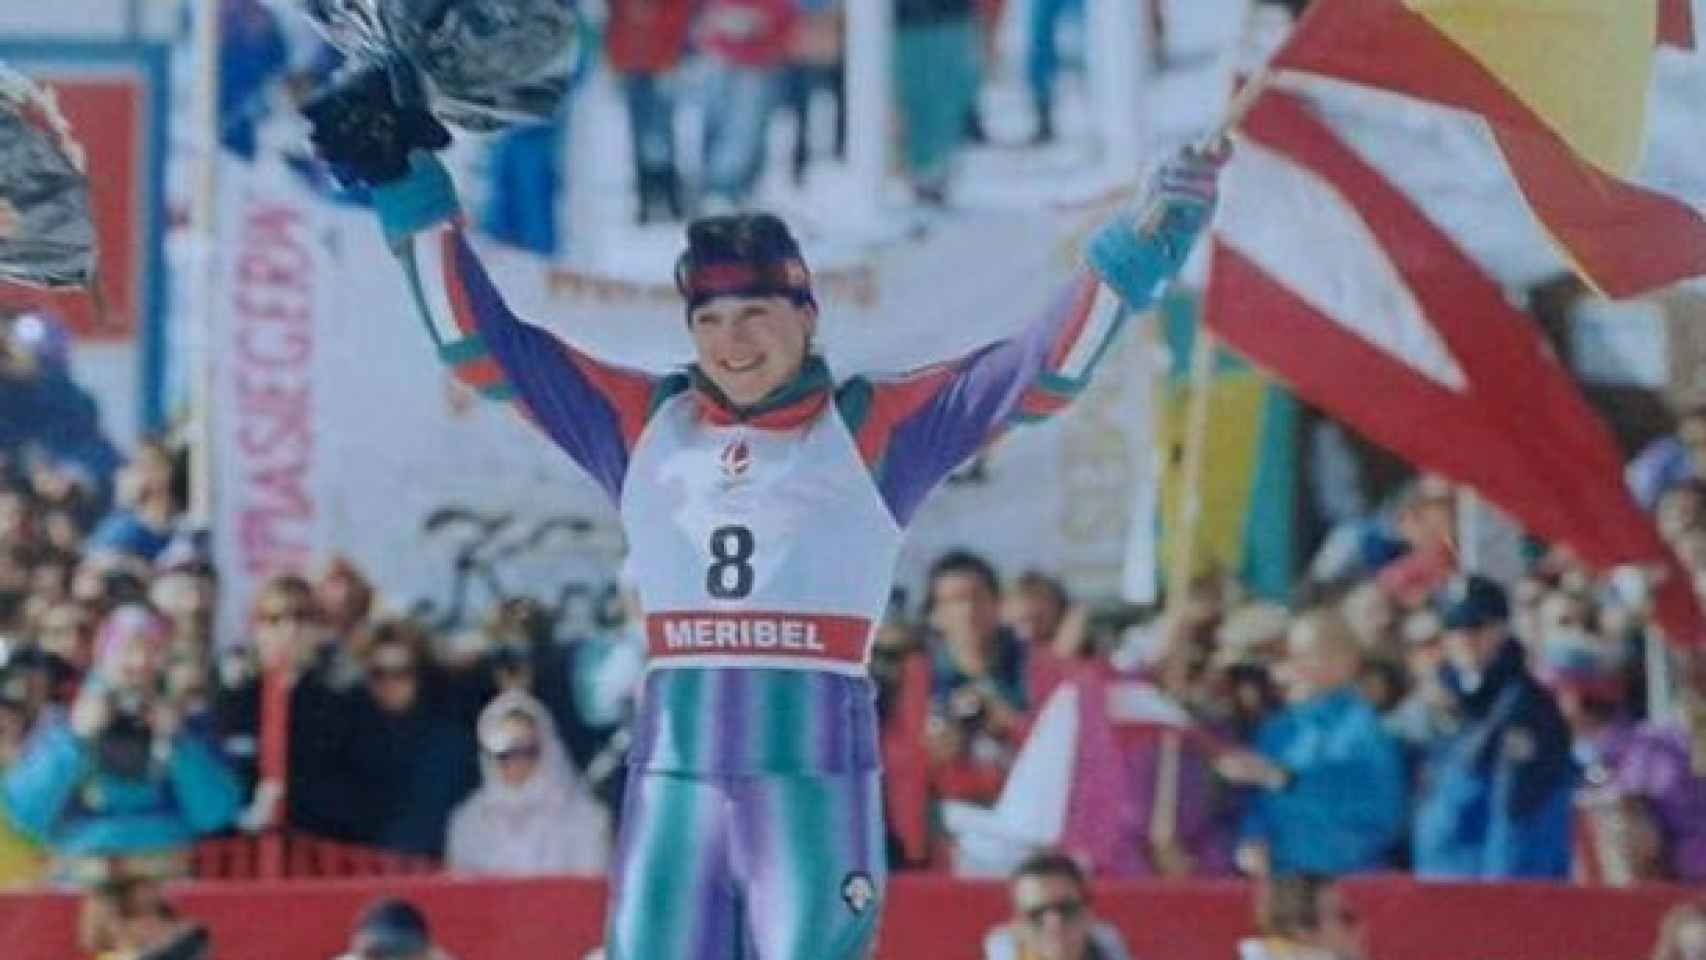 La esquiadora celebra su primer oro en los Juegos Olímpicos de Albertville, 1992.